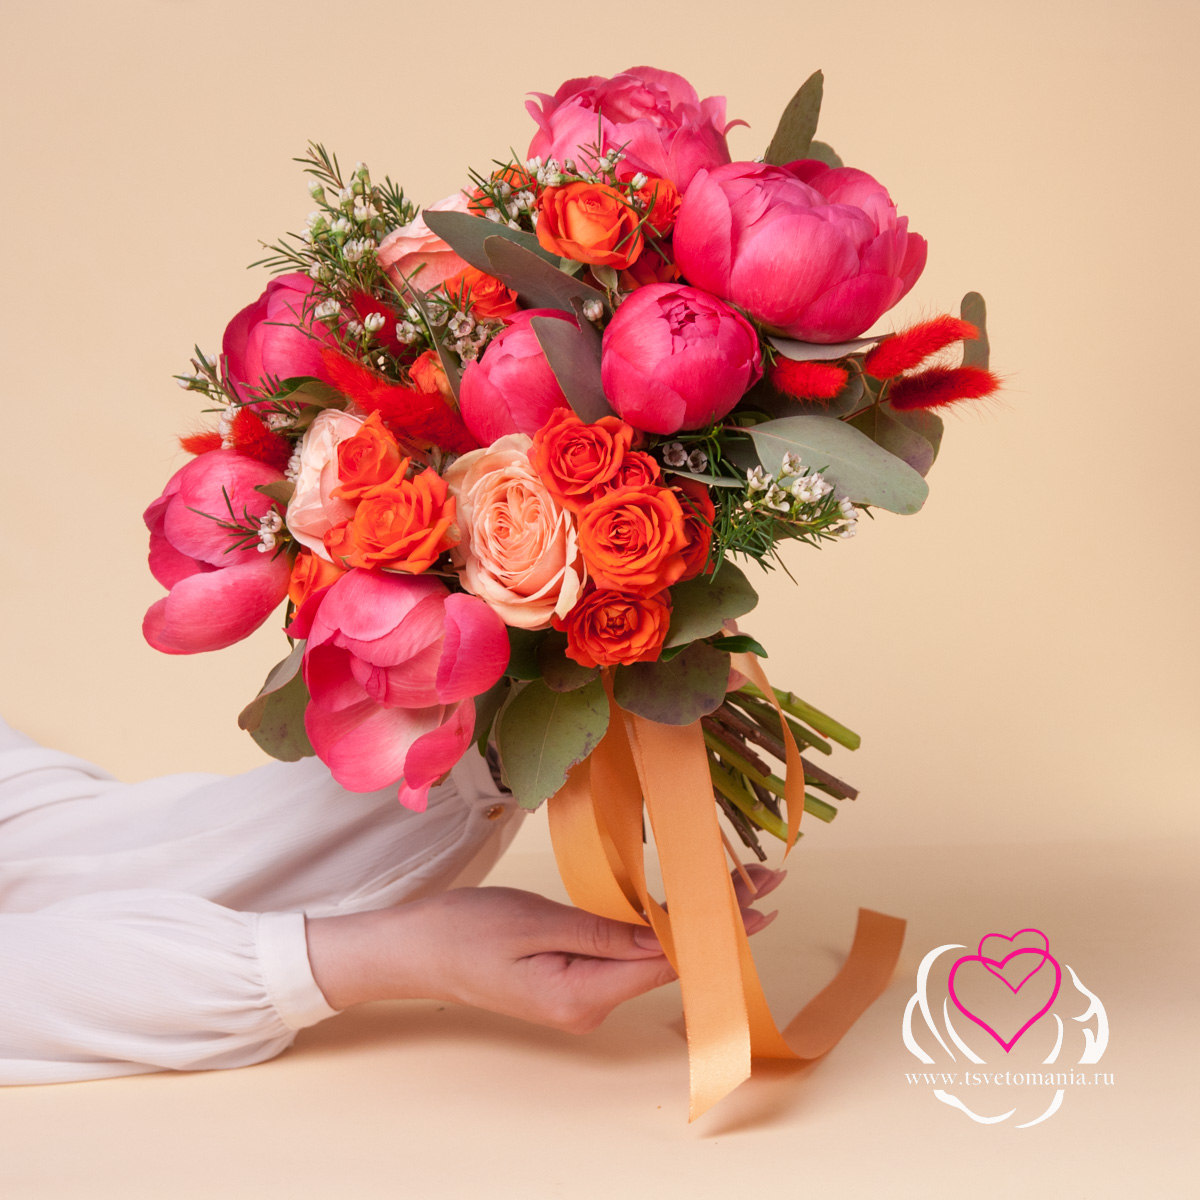 Яркий свадебный букет из пионов и роз свадебные аксессуары popodion свадебный букет цветочный женский свадебный букет